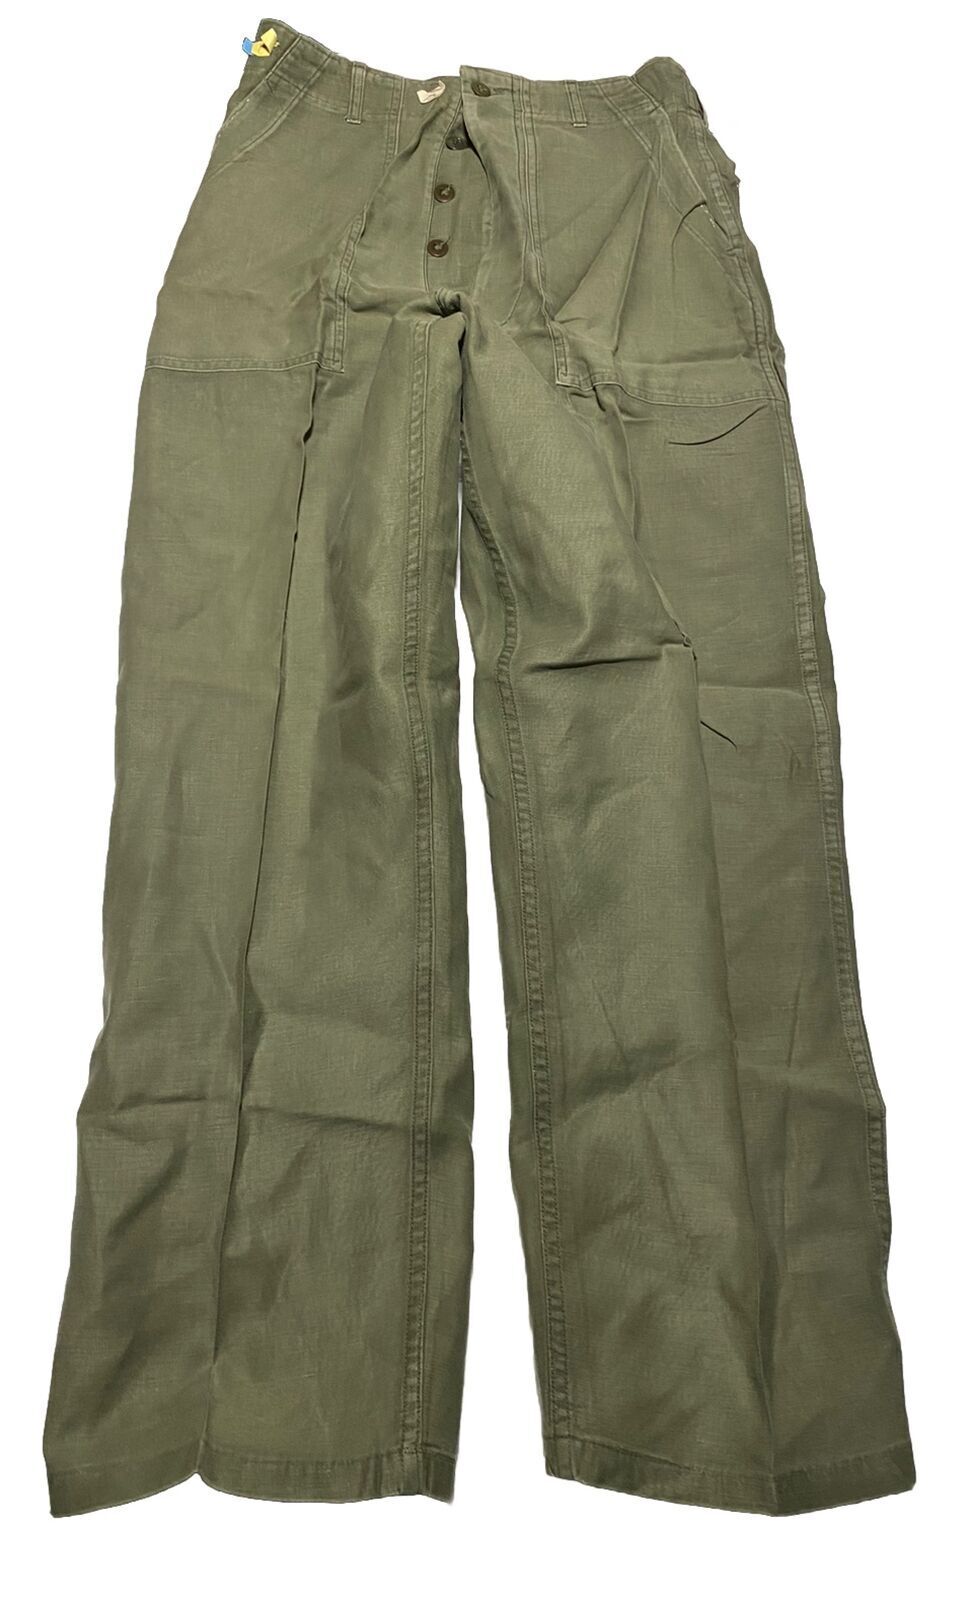 Vintage Vietnam Era OG 107 Trousers Button-Fly Pants 31x32 AC1